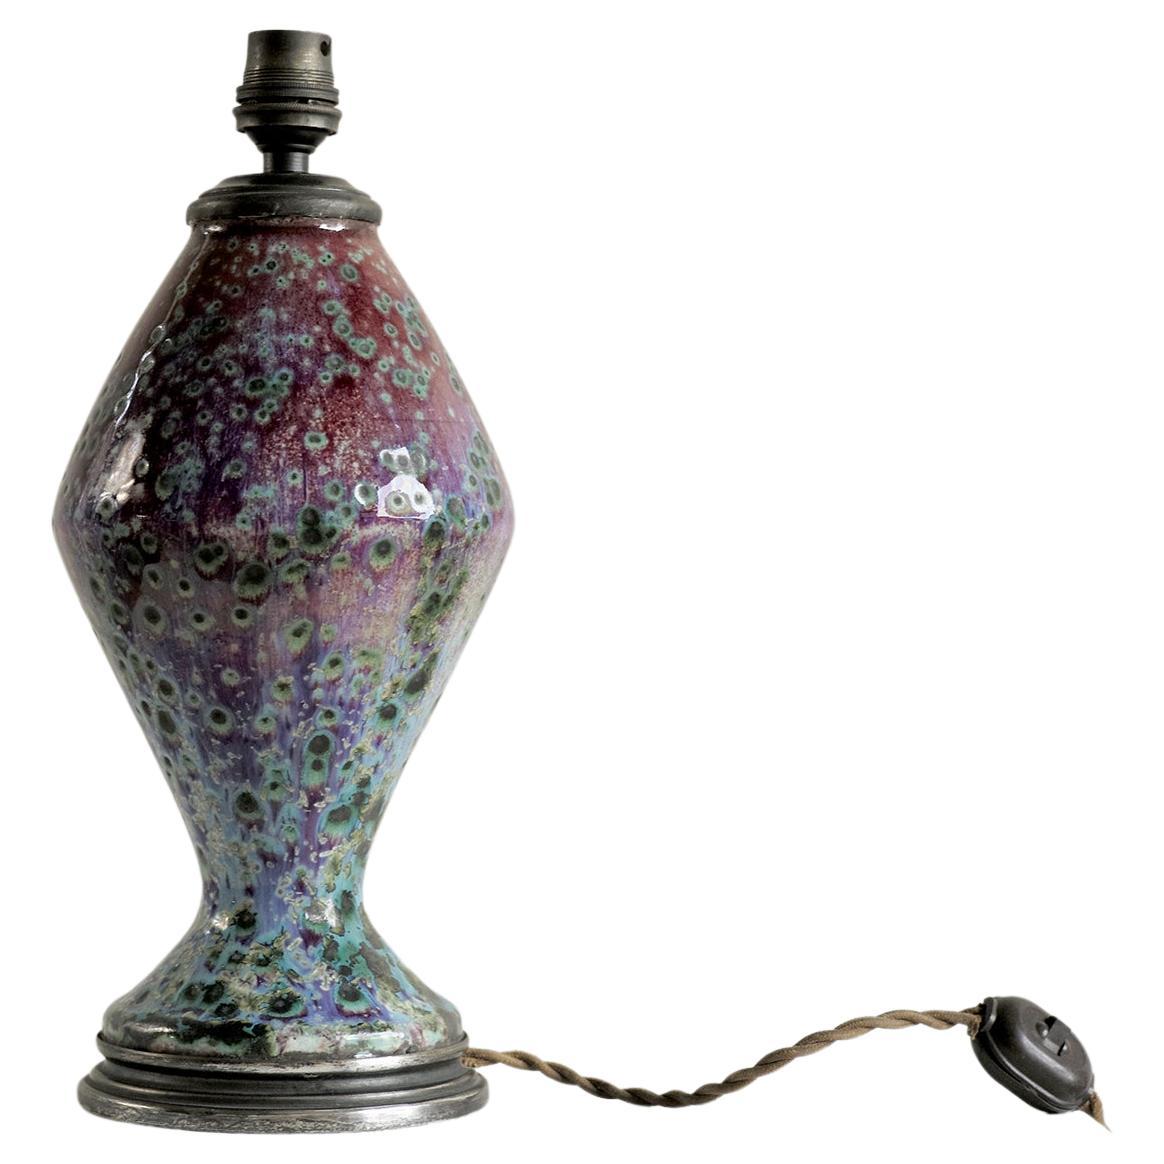 Lampe aus emailliertem Sandstein von Fernand Rumebe, 1875-1952, Frankreich 1920